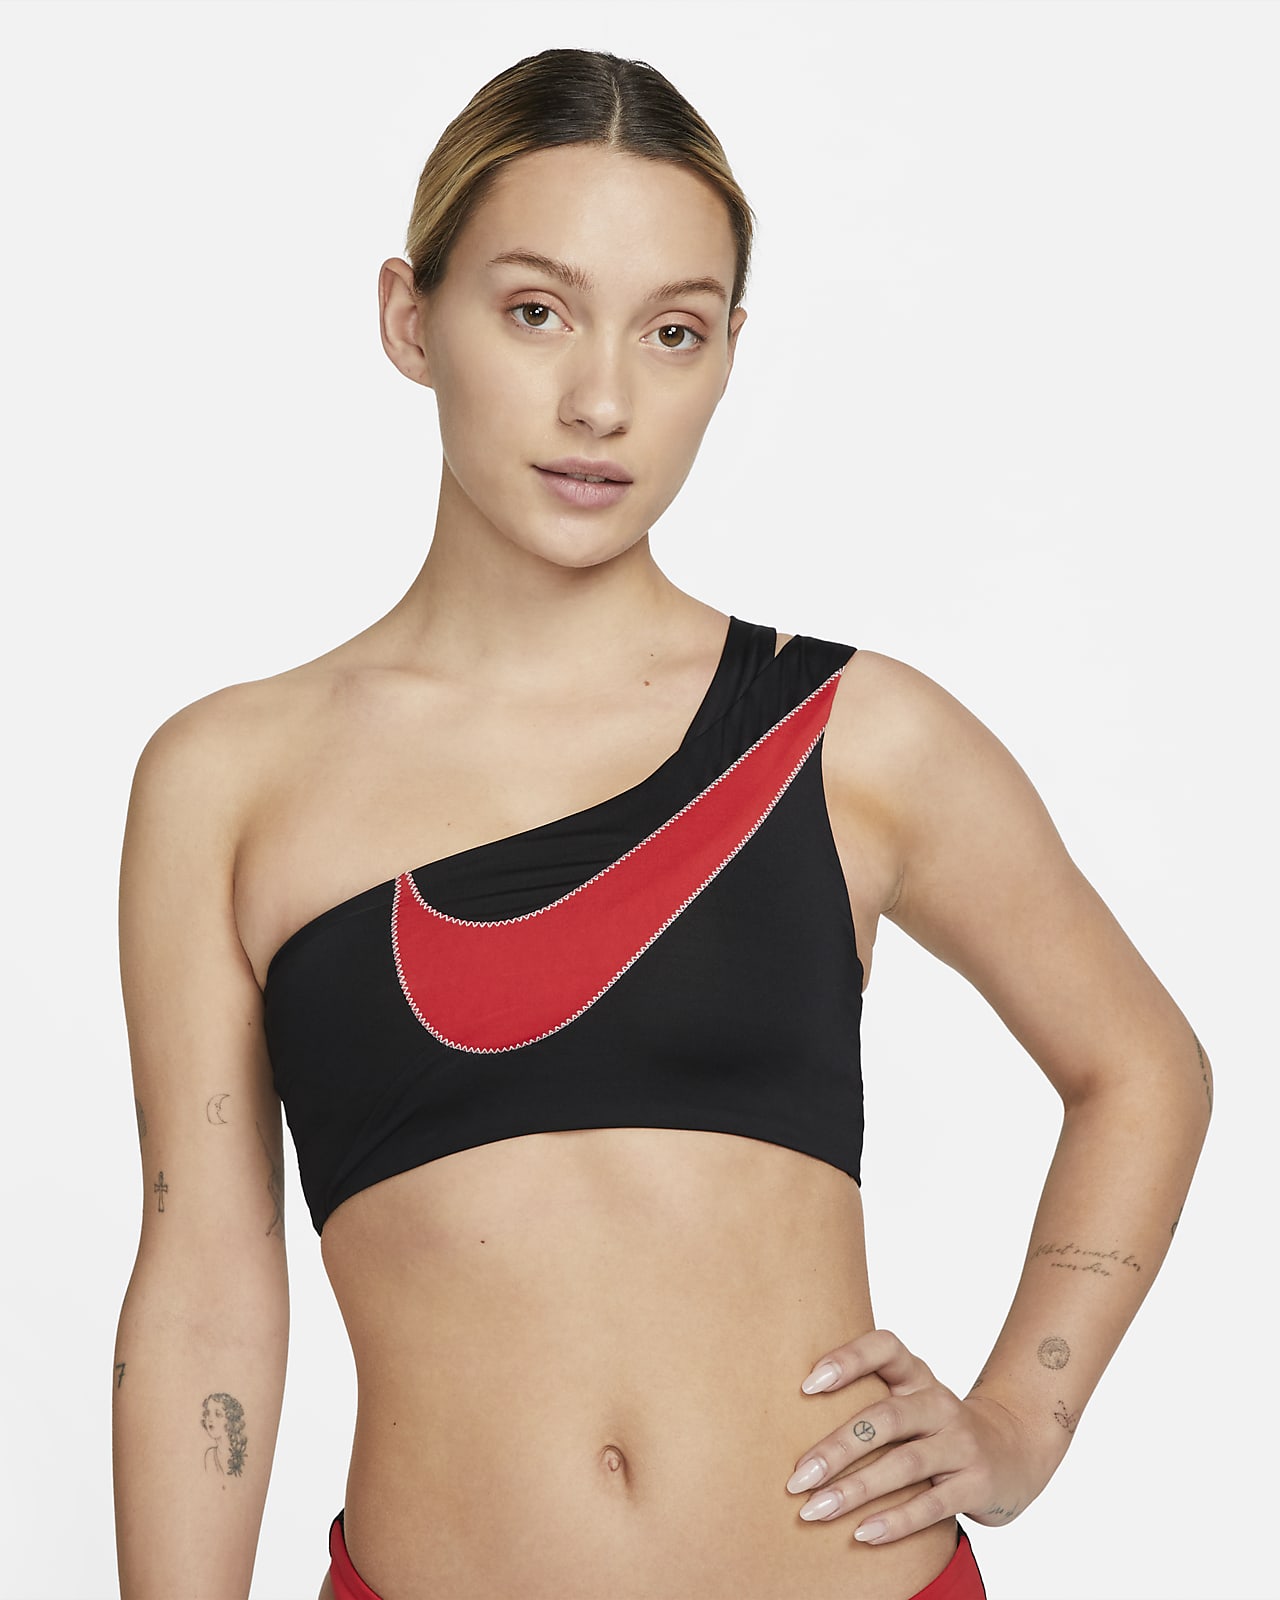 Nike Built-in Bra Bikinis for Women